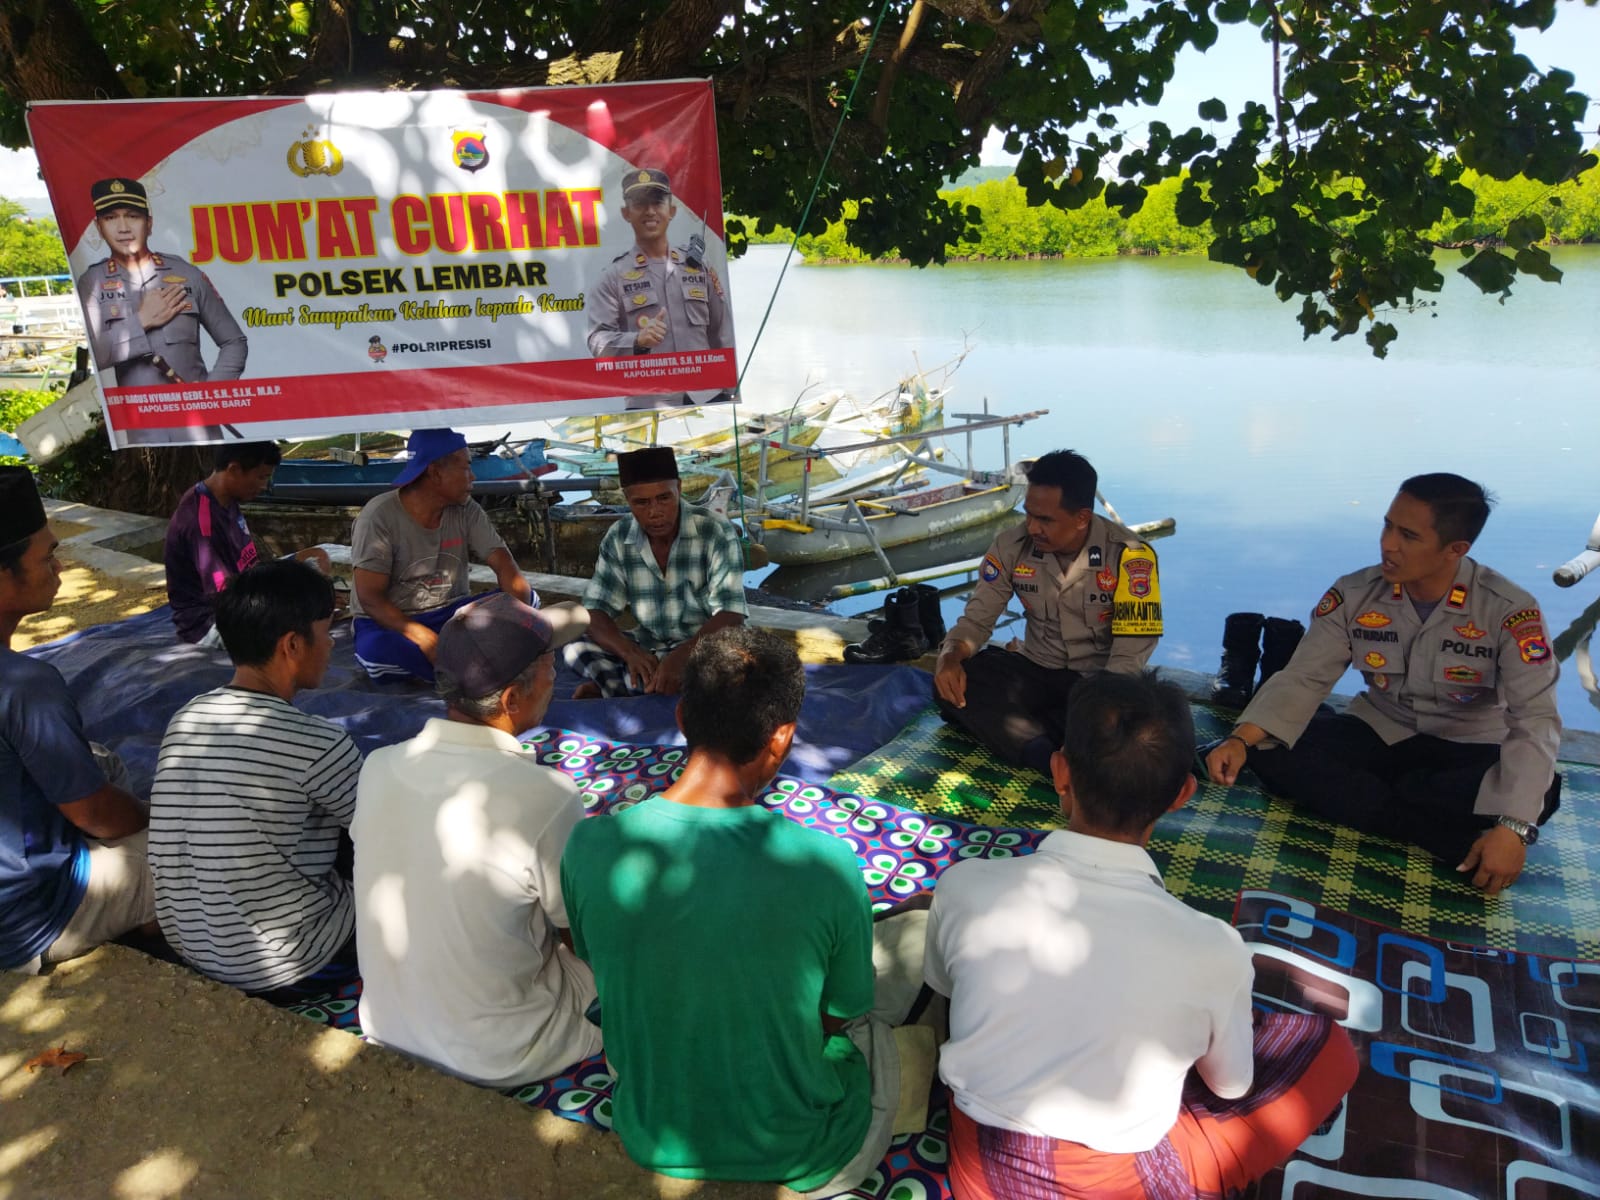 Jumat Curhat Kapolsek Lembar dengan Kelompok Nelayan di Dusun Puyahan Desa Lembar Selatan